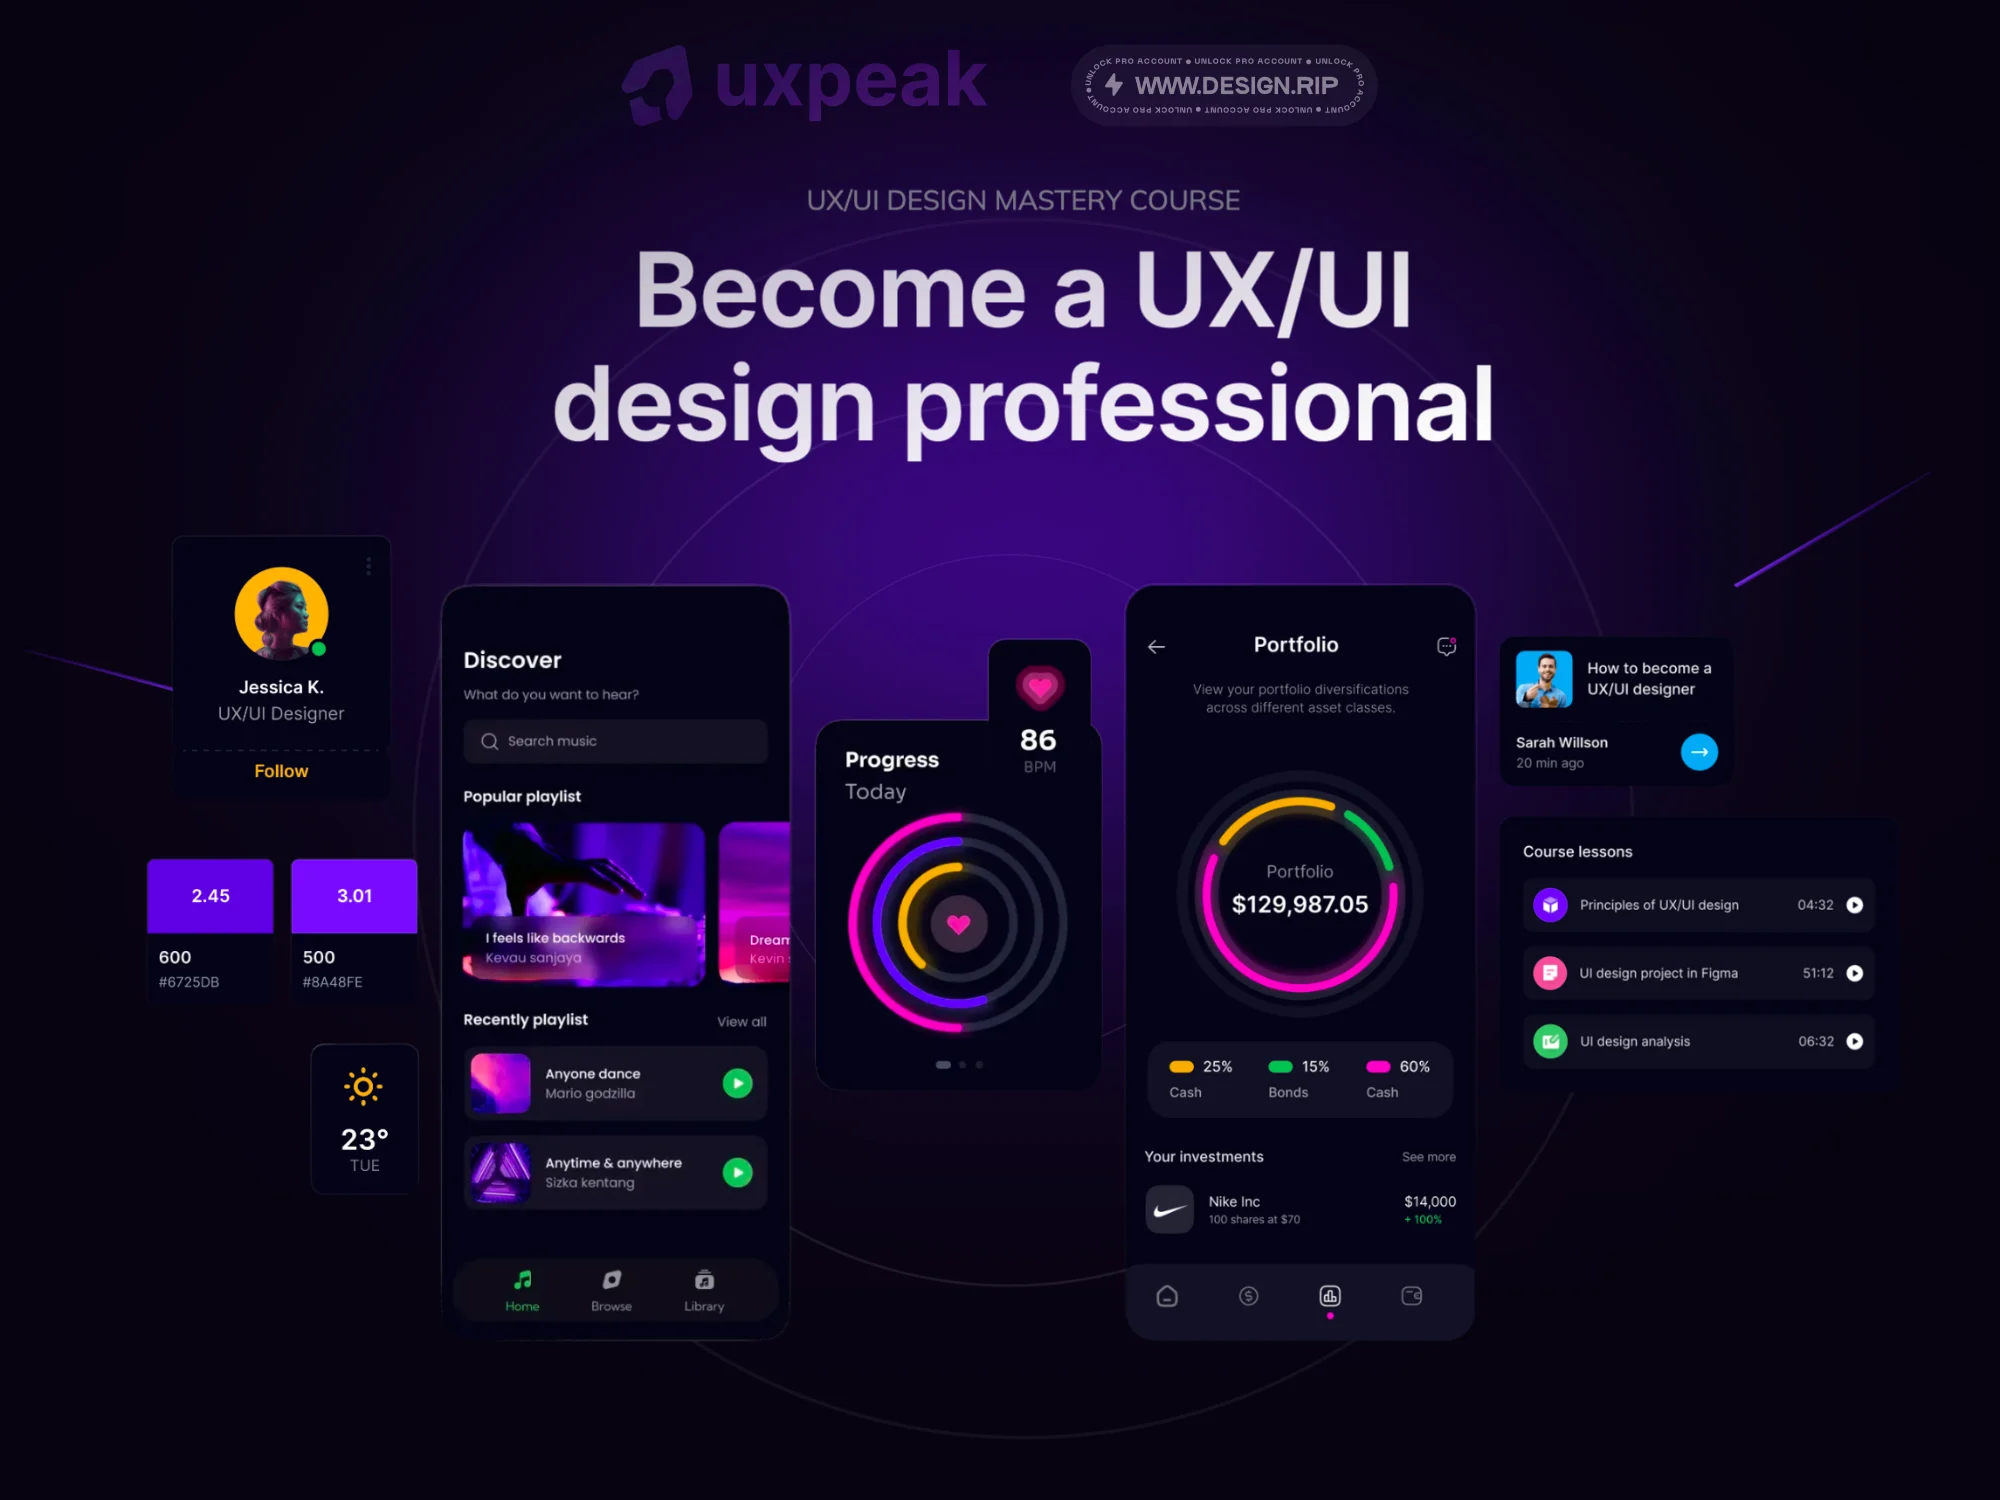 [VIP] uxpeak: UX/UI Design Mastery Course